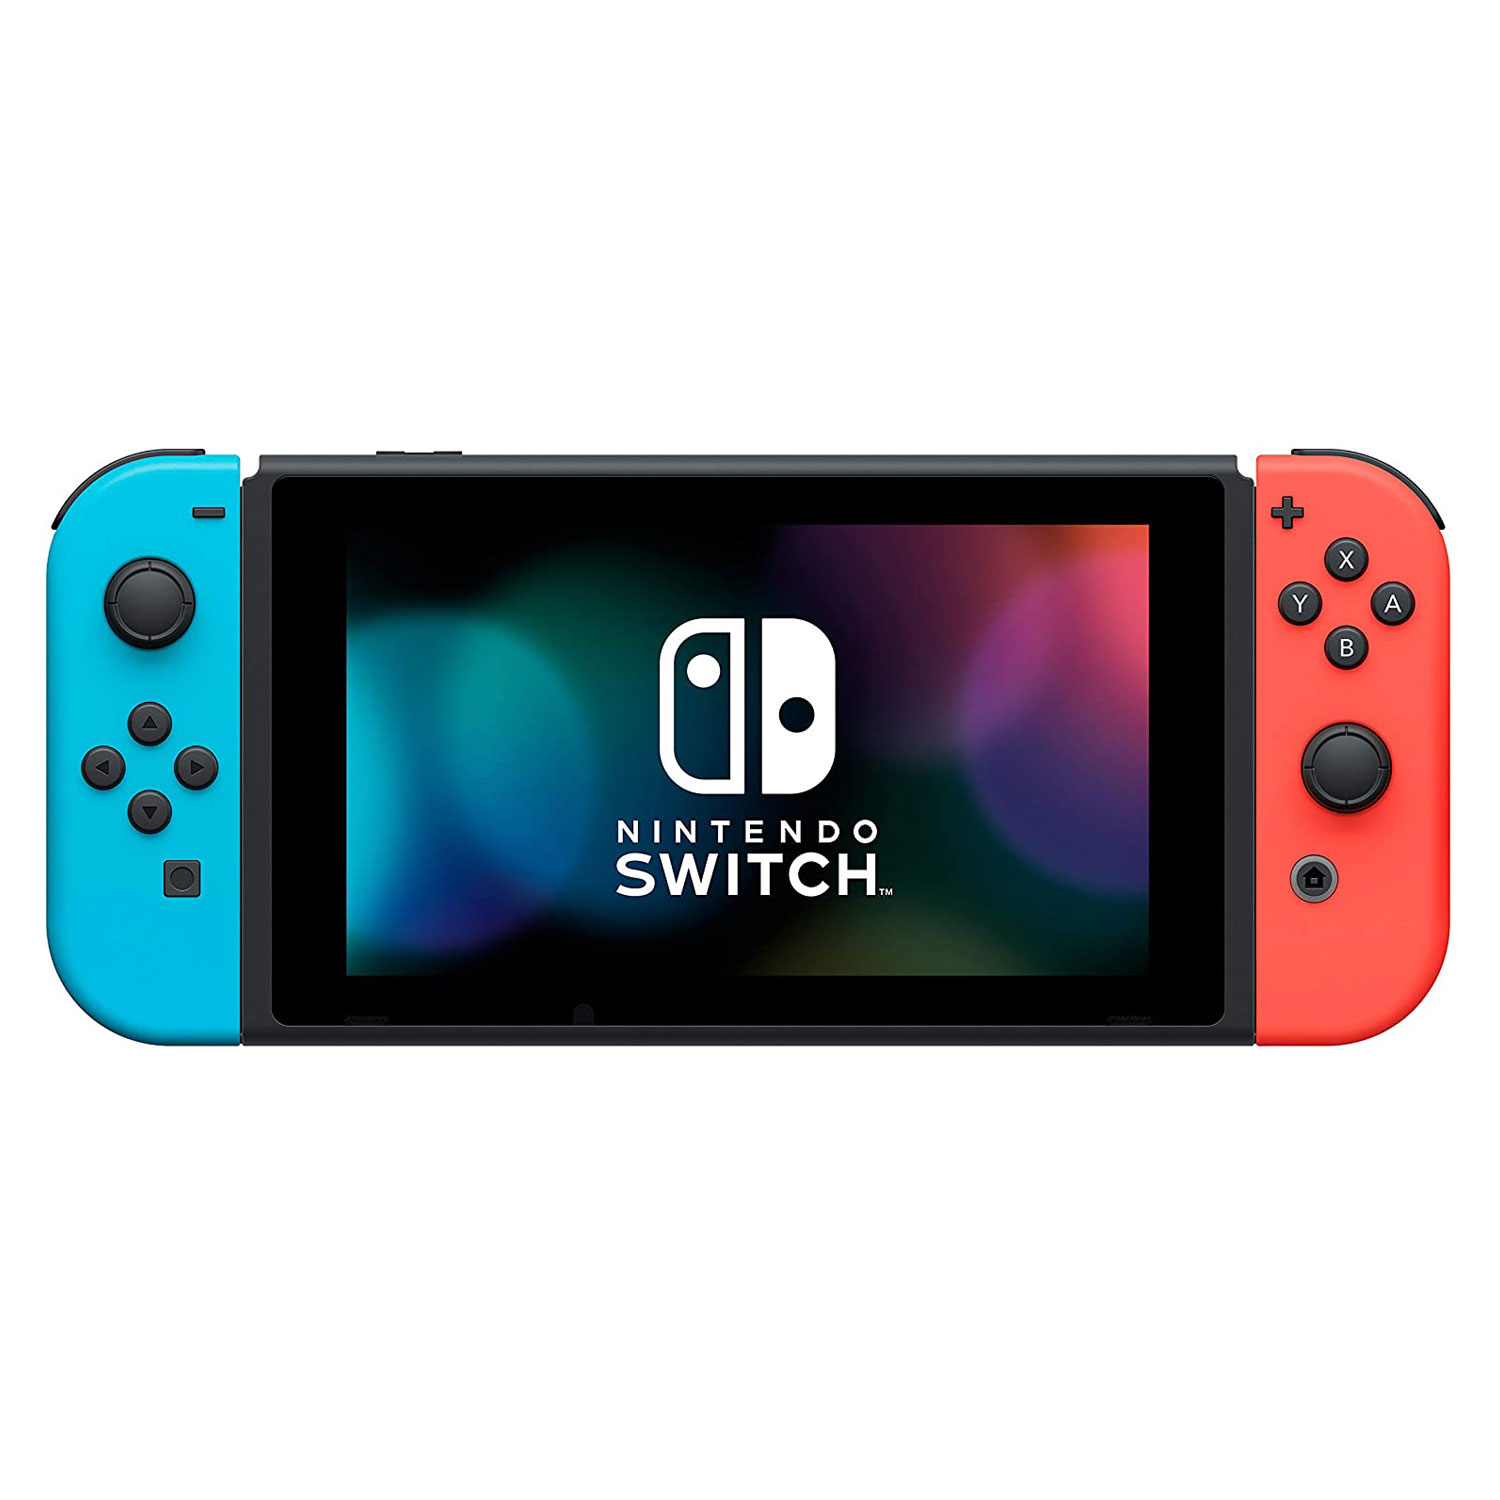 Console Nintendo Switch Sports V2 Neon 32GB Japão - Azul Vermelho (HAD-S-KABGR)(Caixa Danificada)